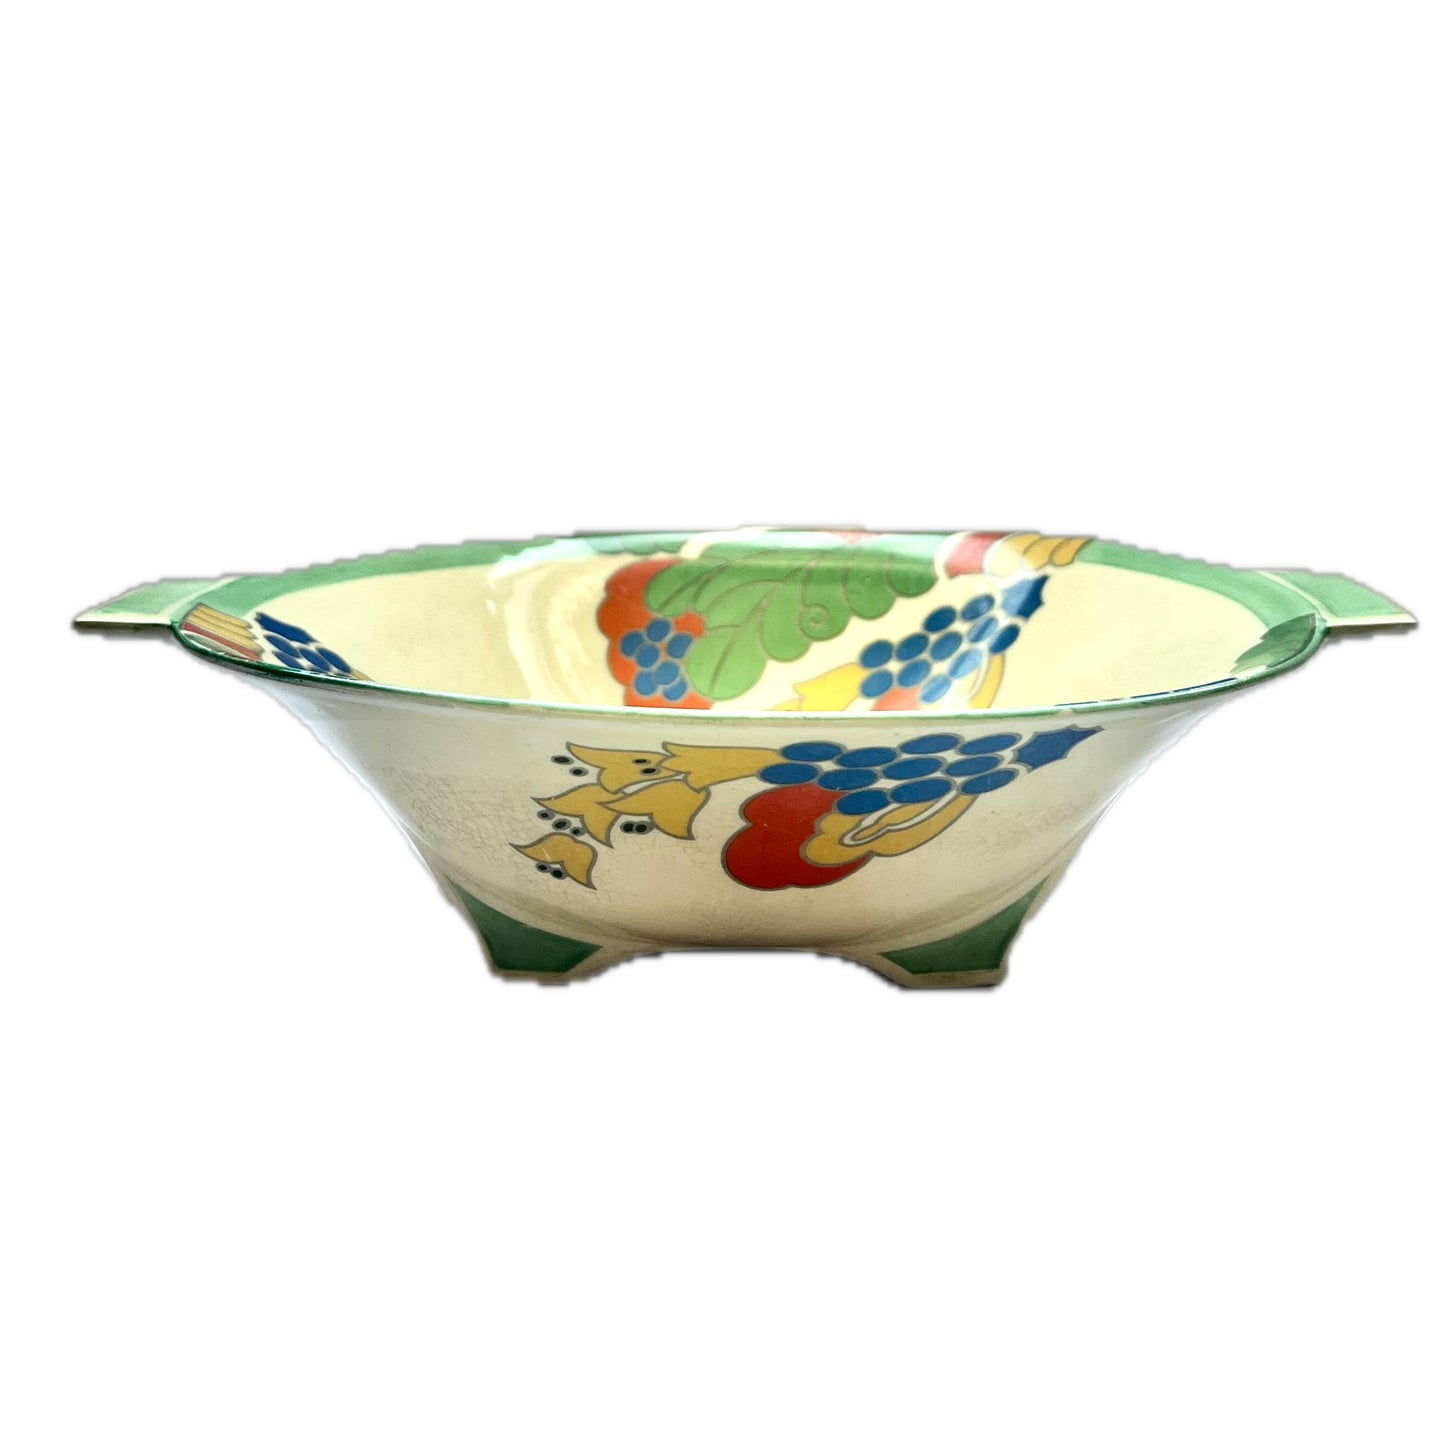 Statement 1930s Art Deco Royal Doulton Art Deco porcelain serving bowl in Caprice Pattern